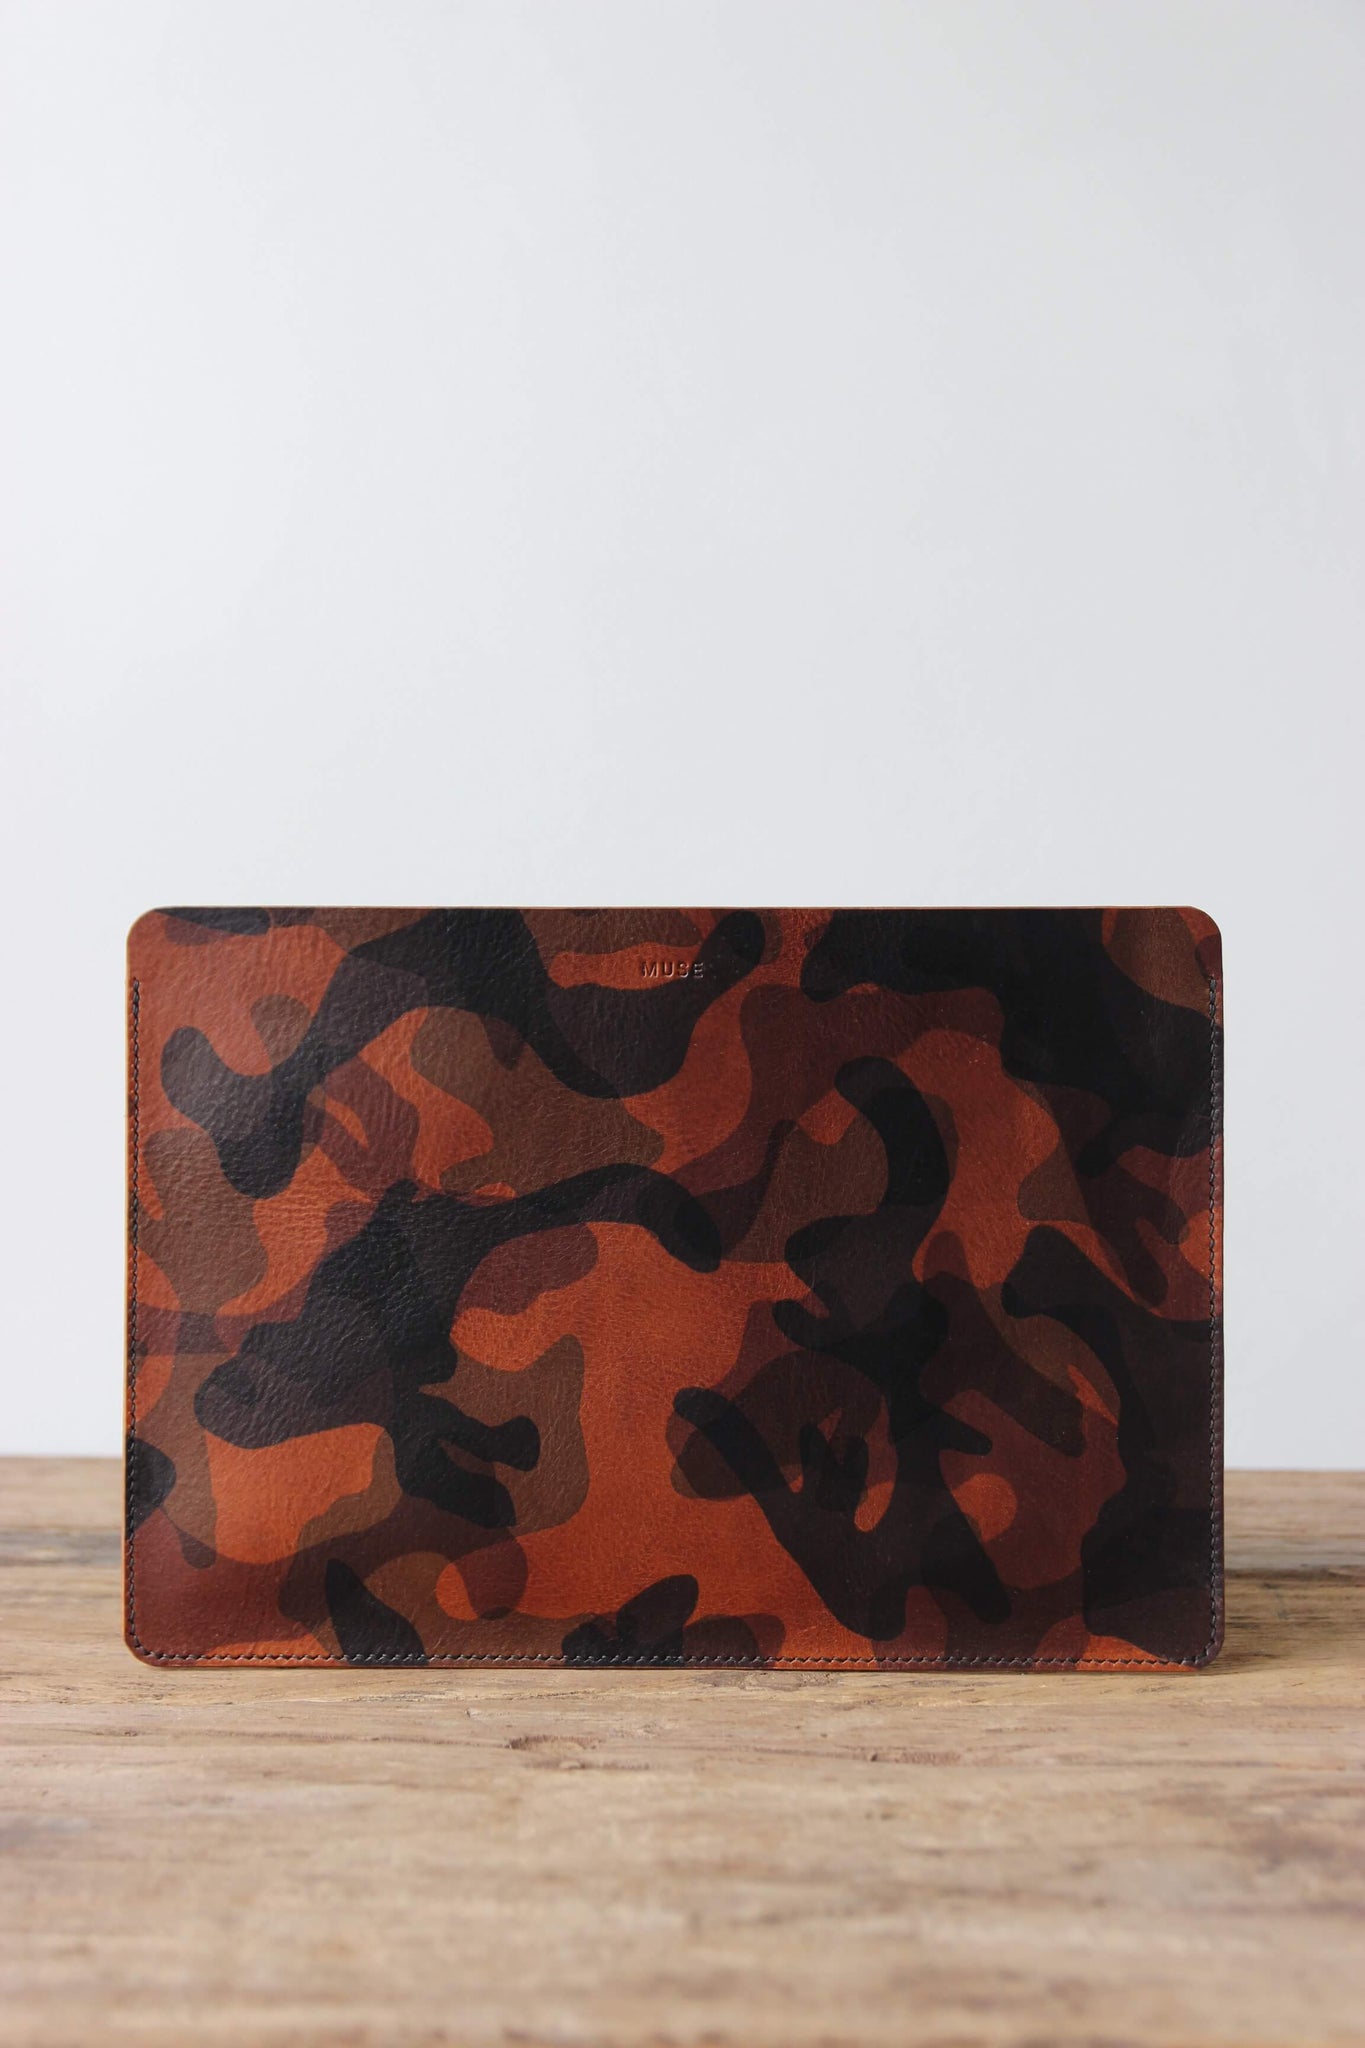 Eine Leder MacBook Hülle in Camouflage steht auf einem Holztisch.